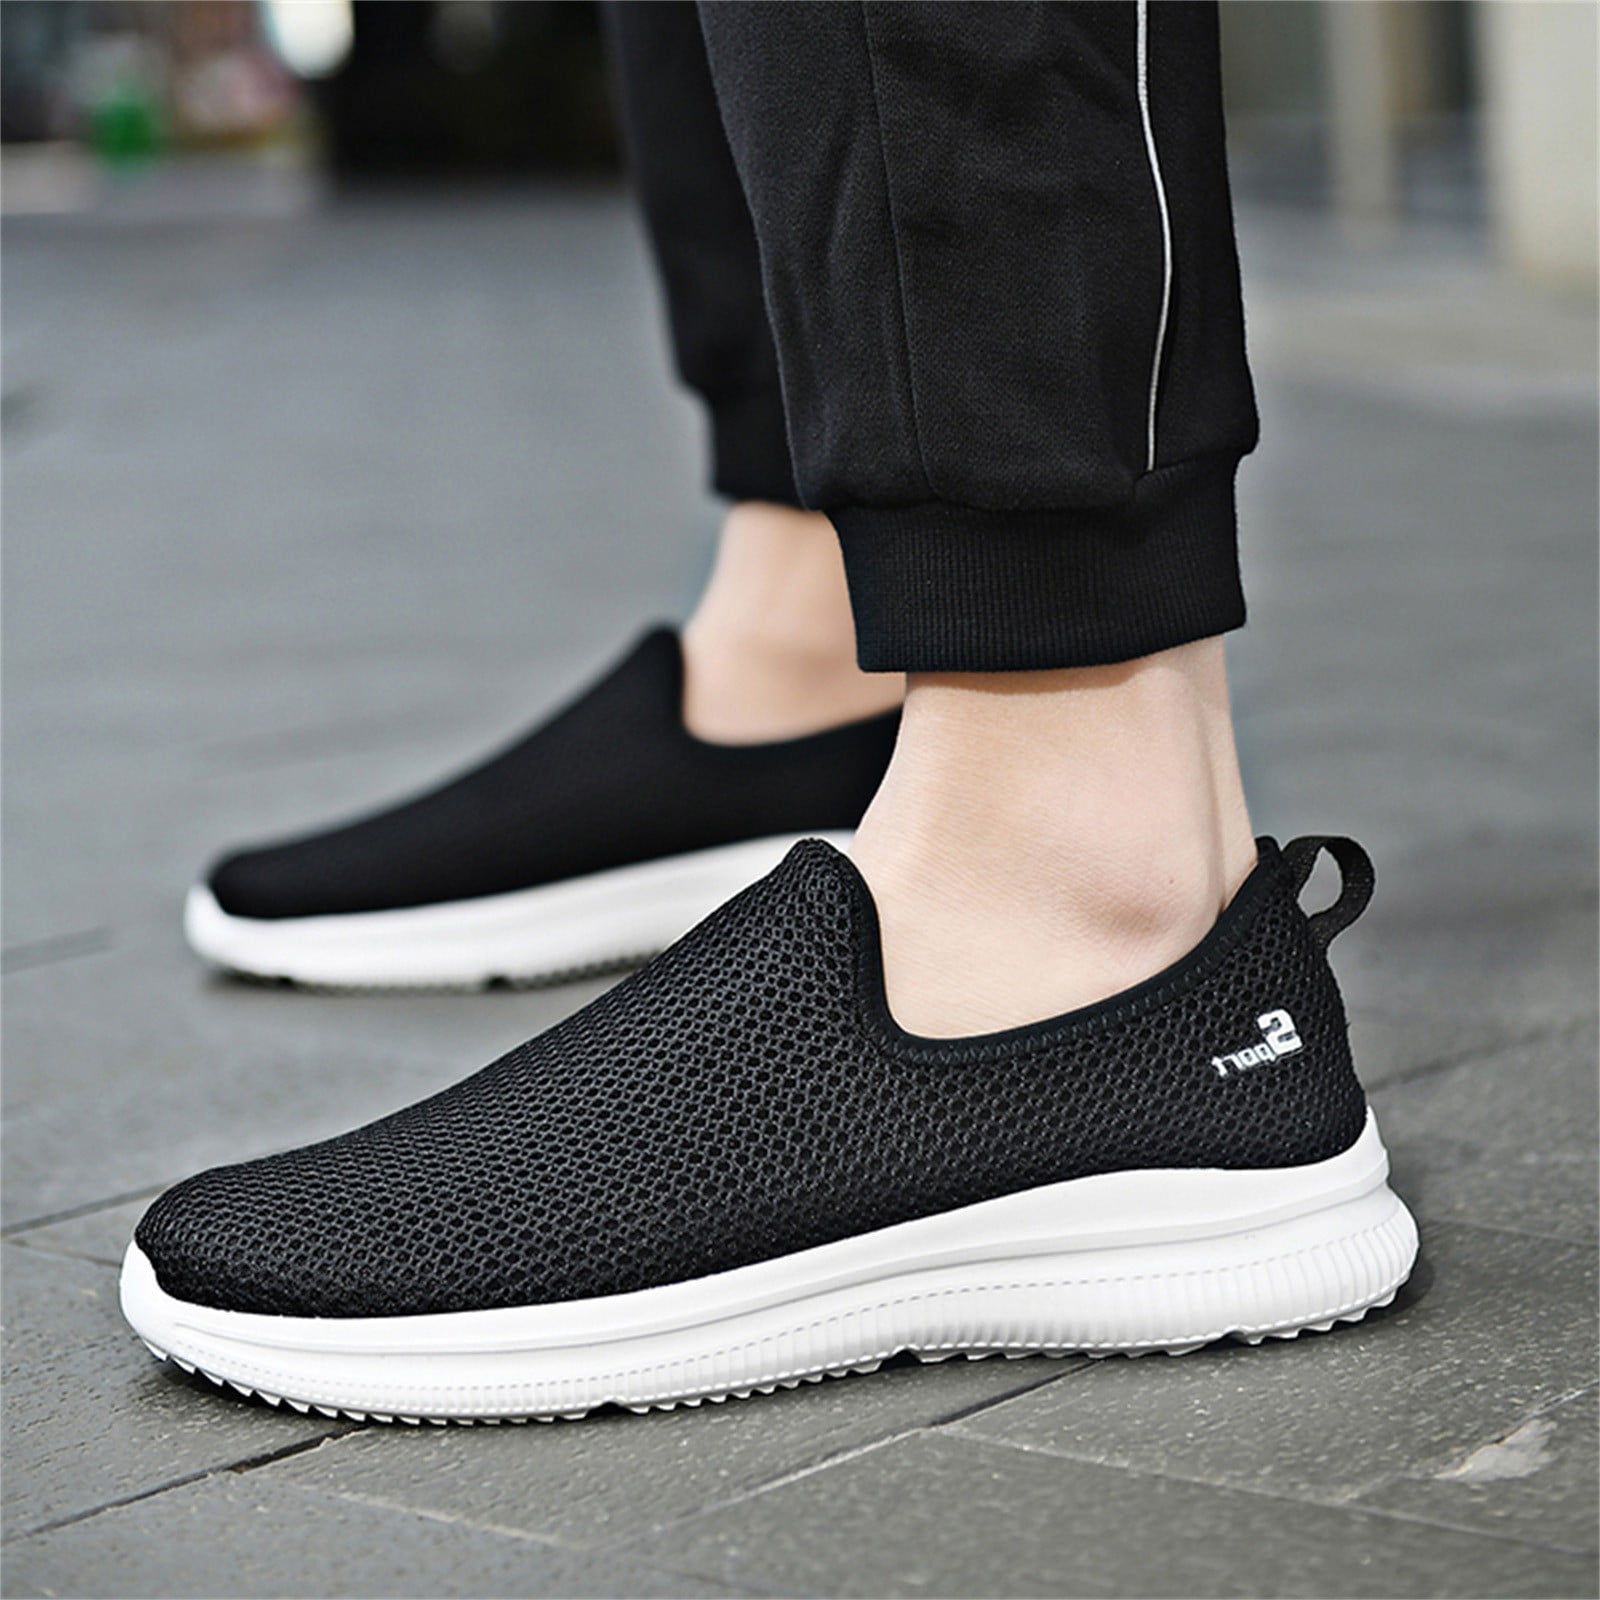 Peaskjp Mens Tennis Shoes Men's Lightweight Breathable Soft Bottom Non Slip Training Sneaker Walking Shoe Grey 9